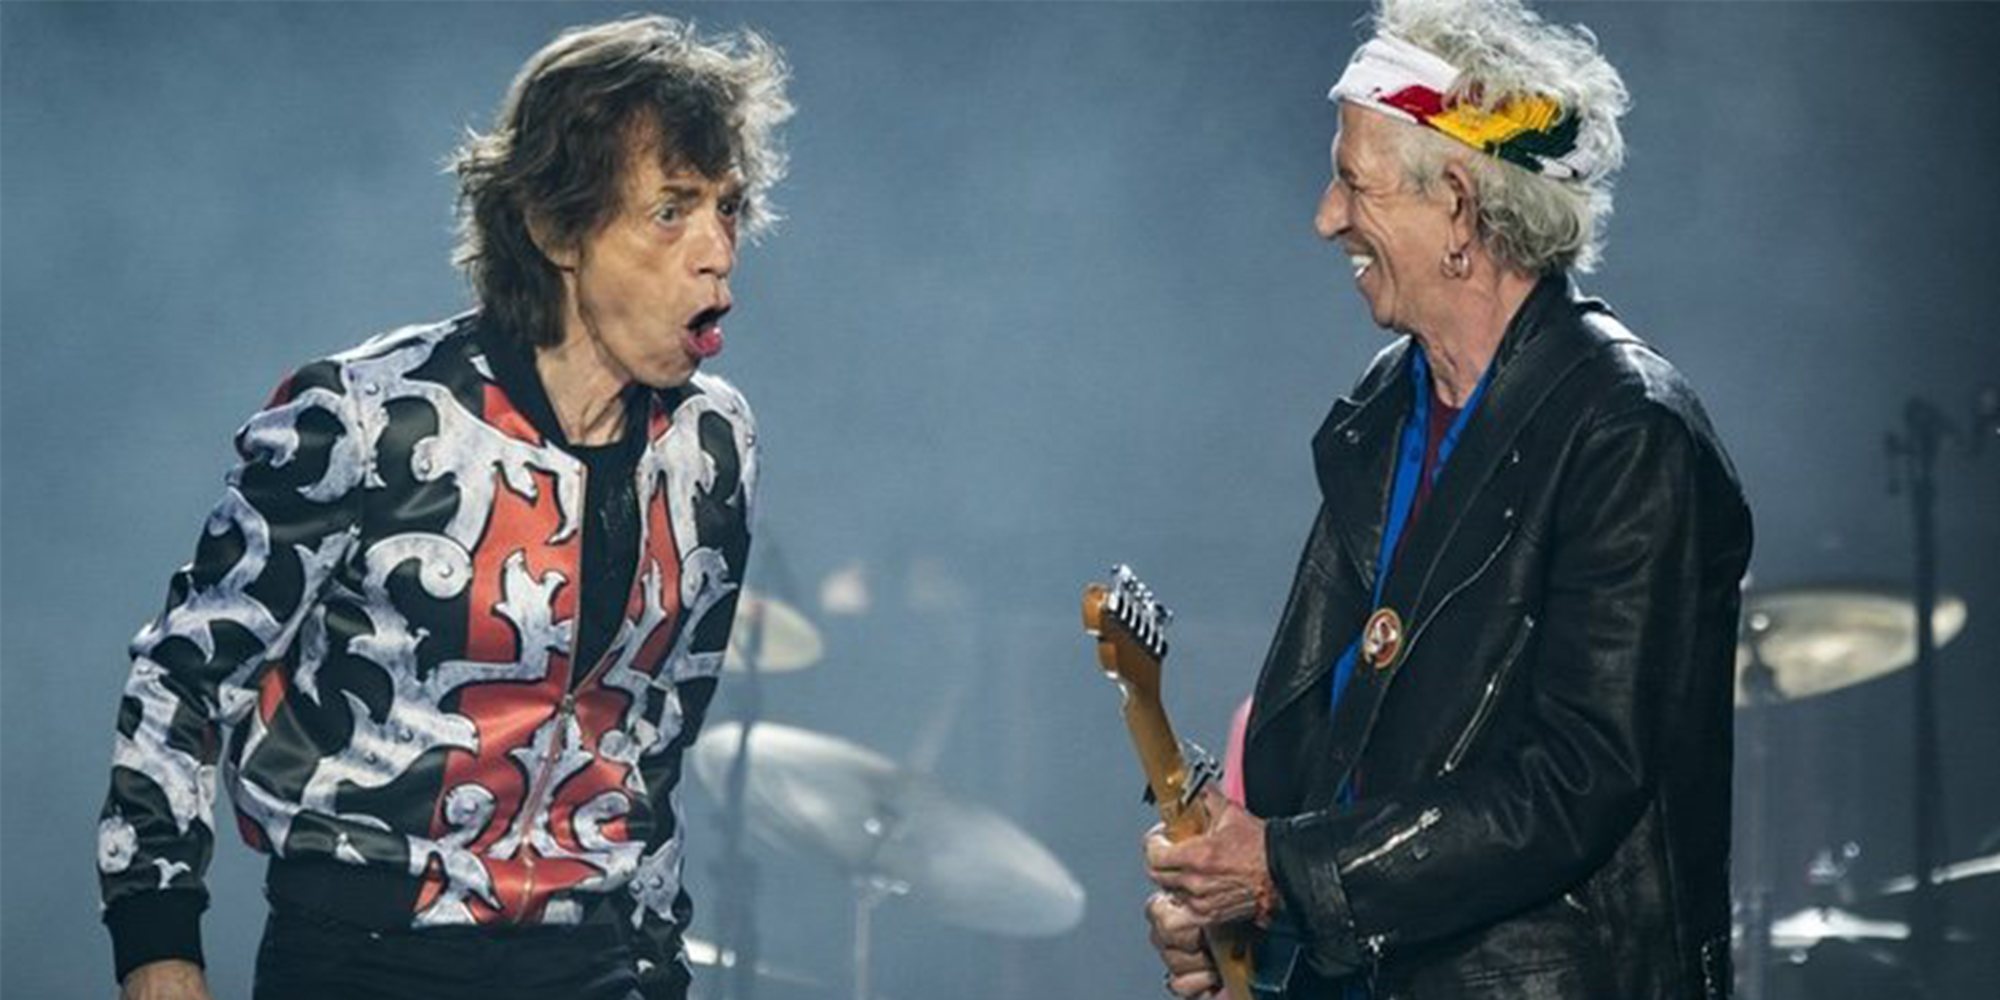 Enemigos Íntimos: Mick Jagger y Keith Richards, la verdad tras los escenarios